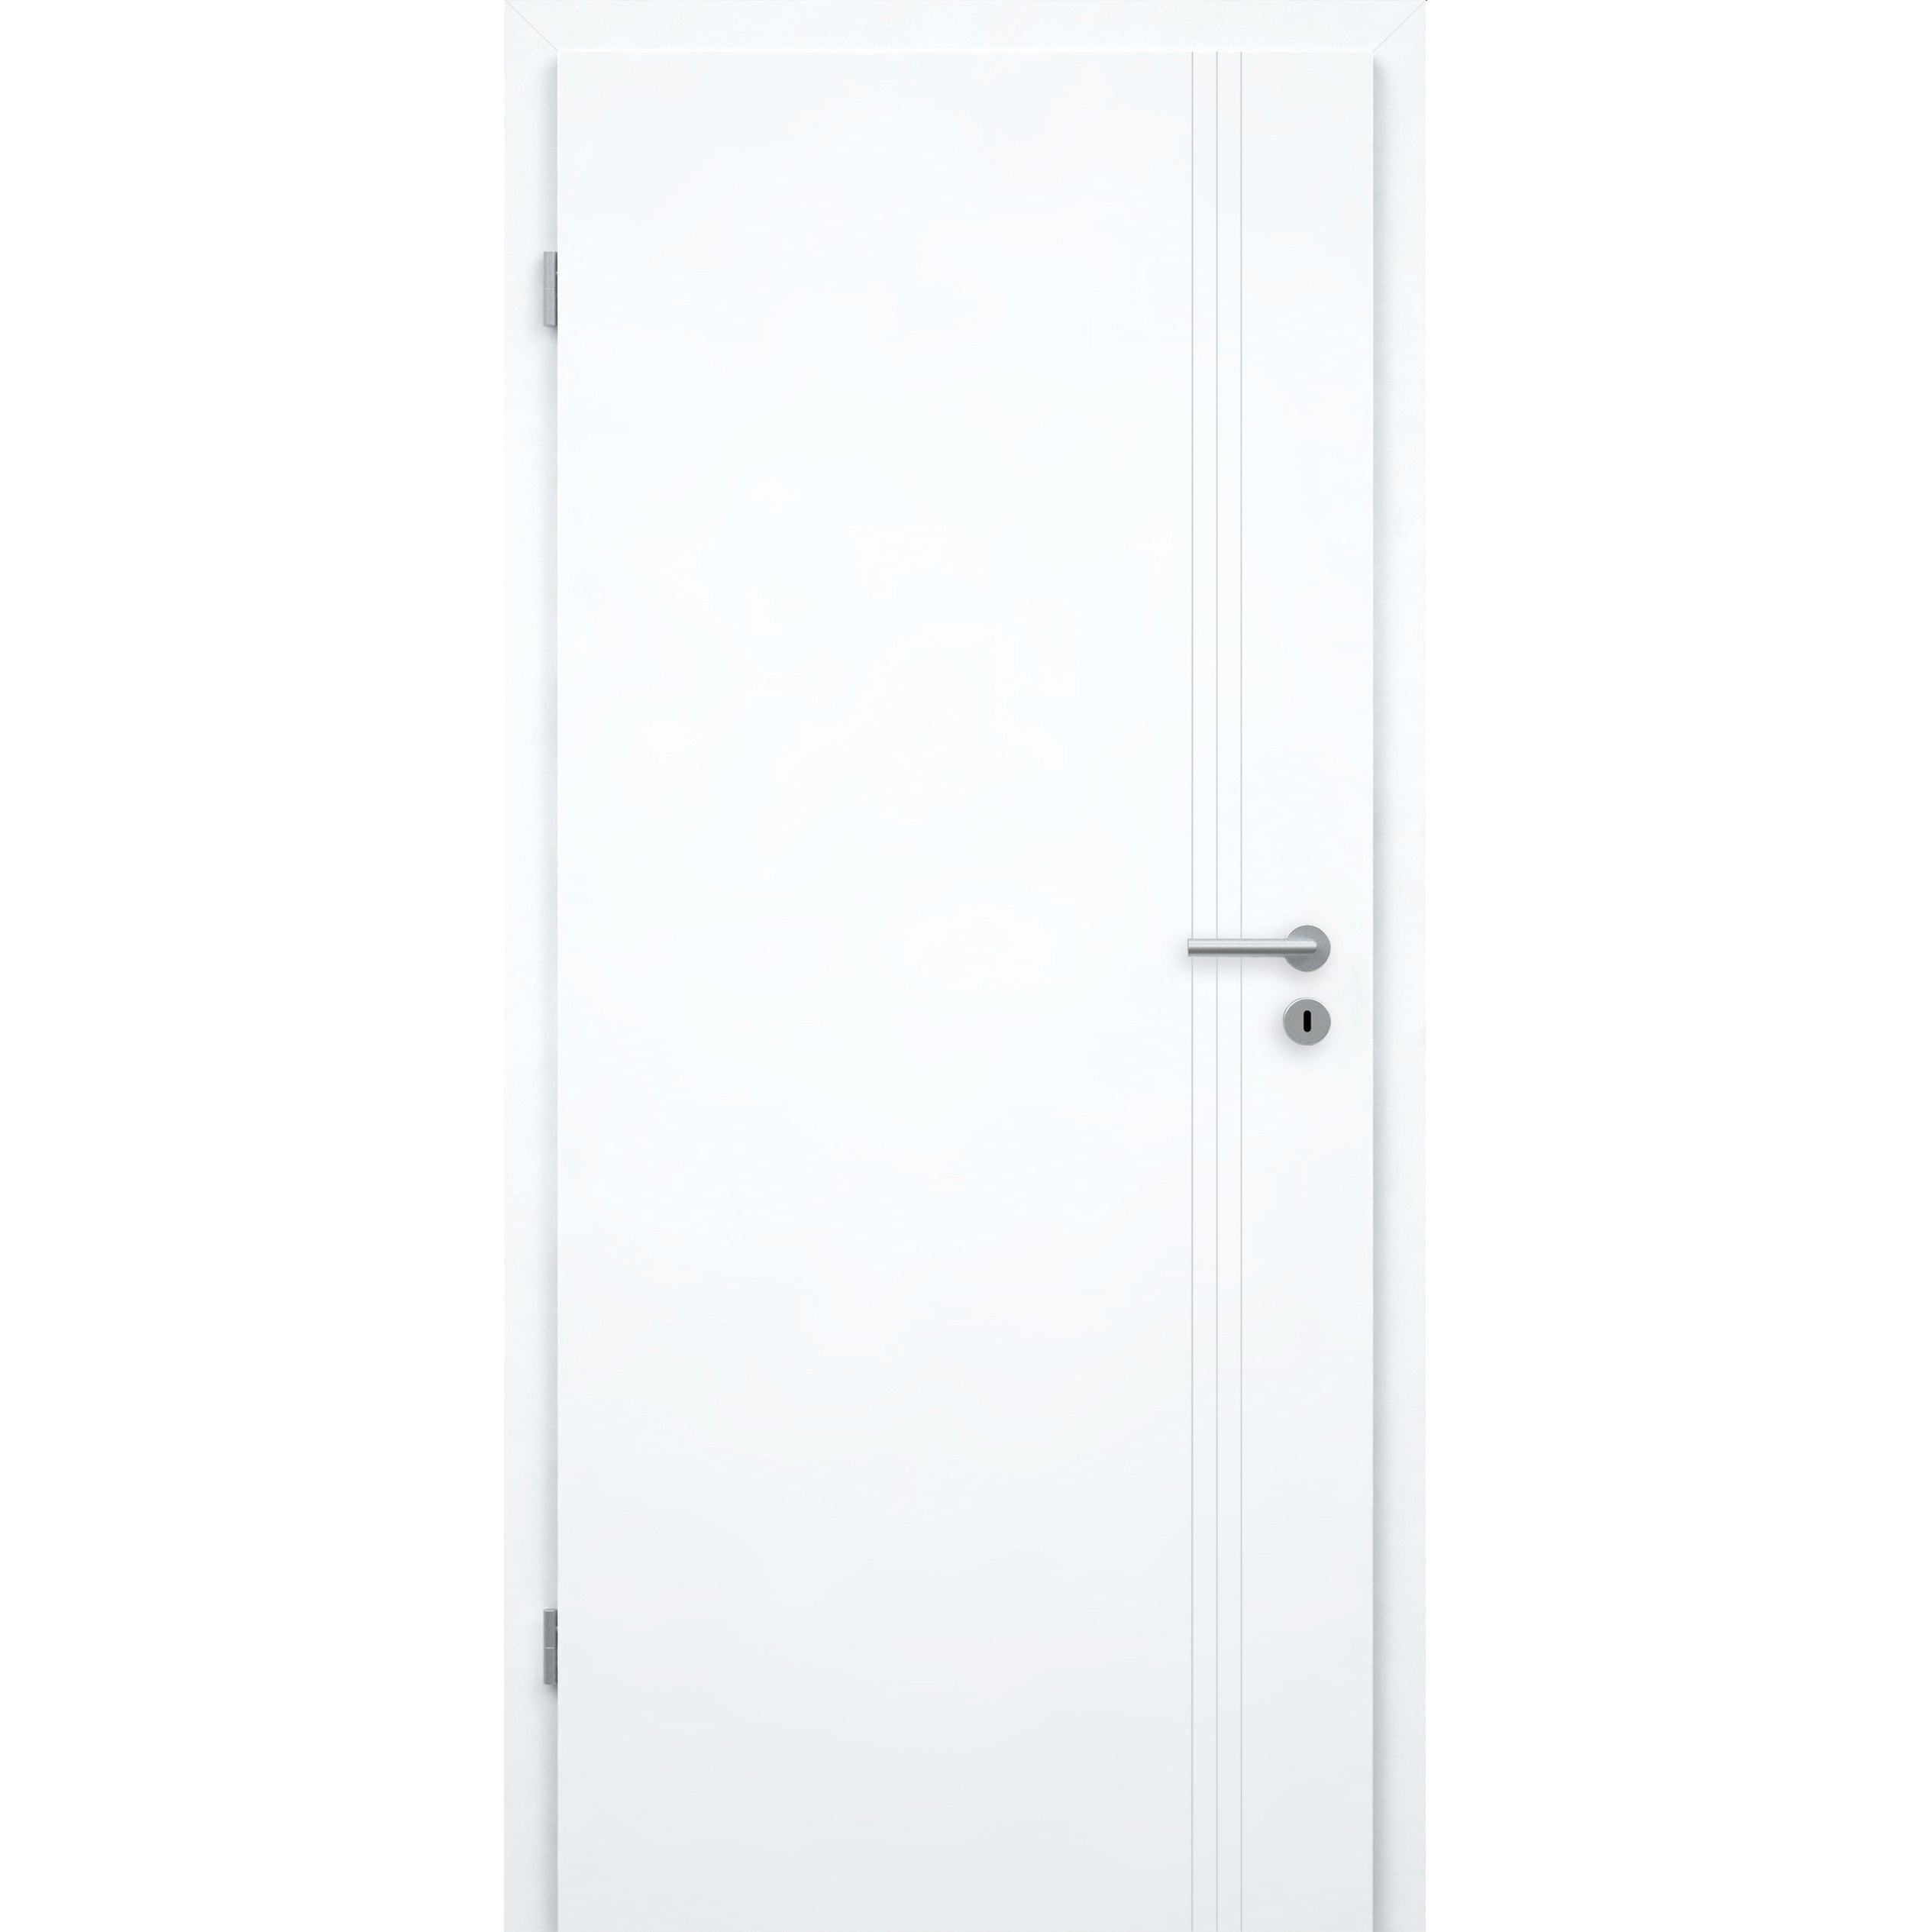 Zimmertür mit Zarge brillant-weiß 3 Rillen aufrecht Schlossseite Designkante - Modell Designtür VS33